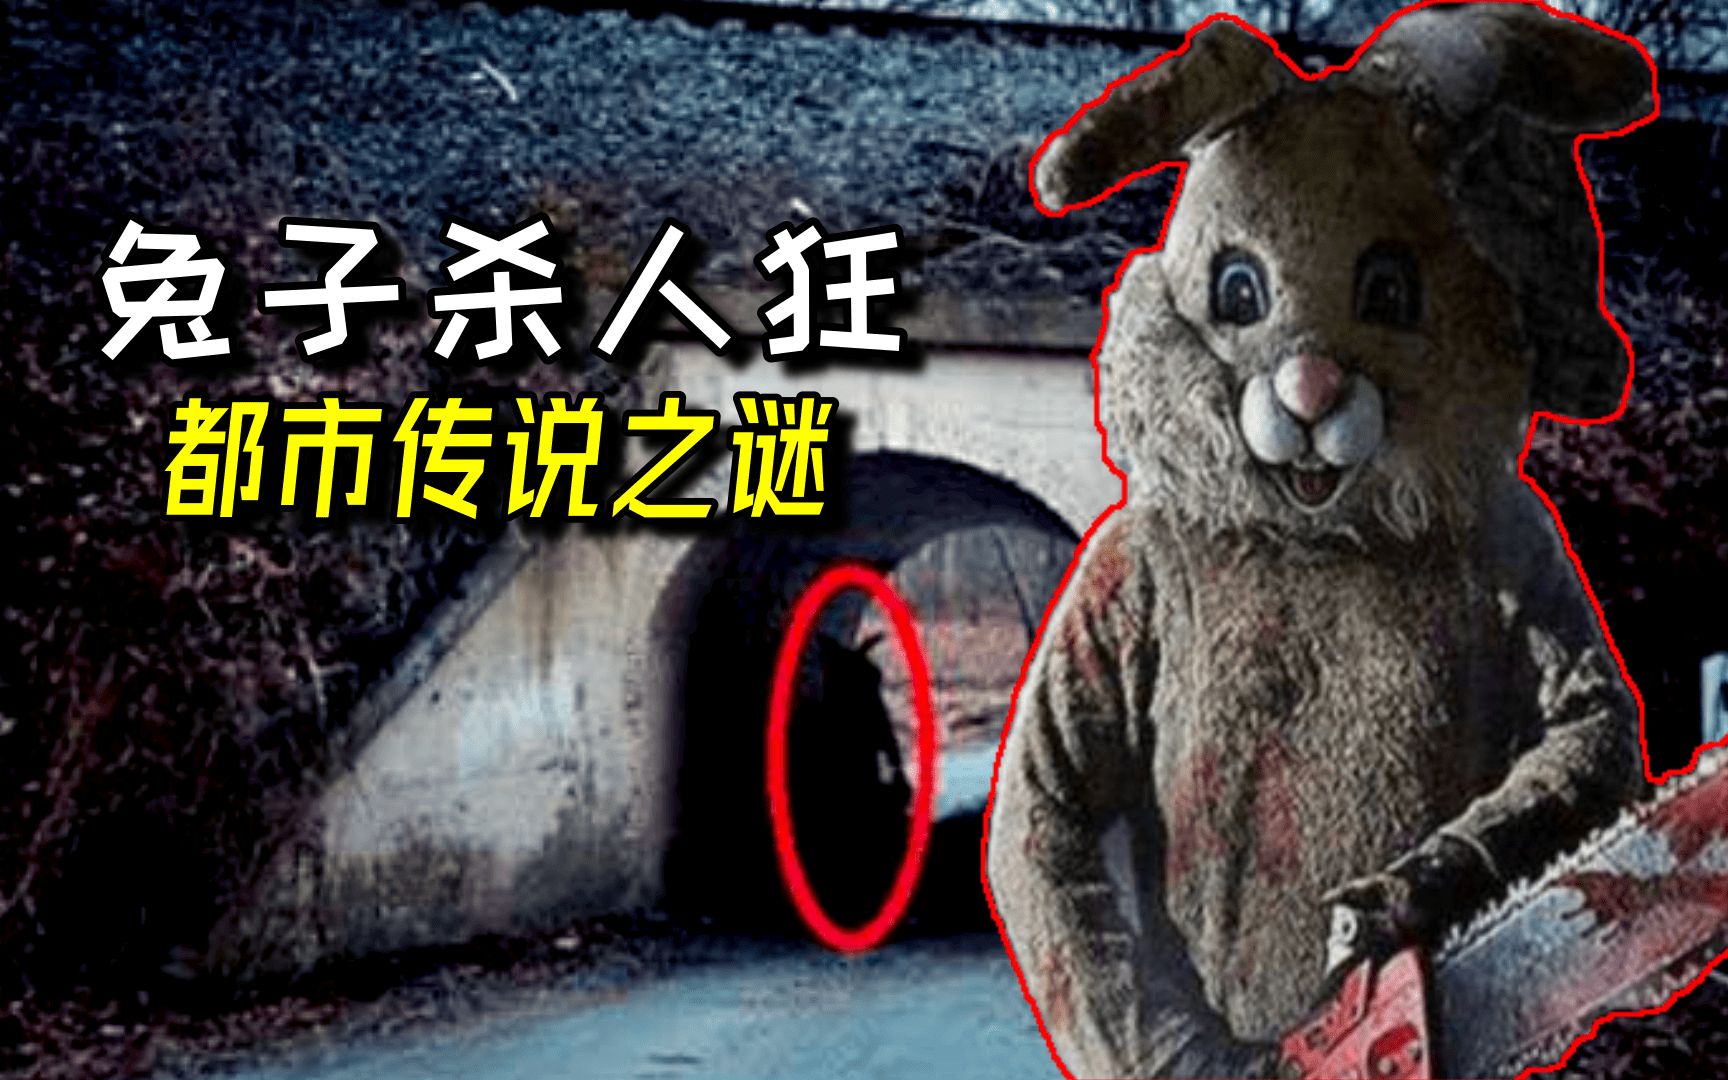 美国都市传说之:兔子杀人狂,兔头人身的桥洞杀手之谜!